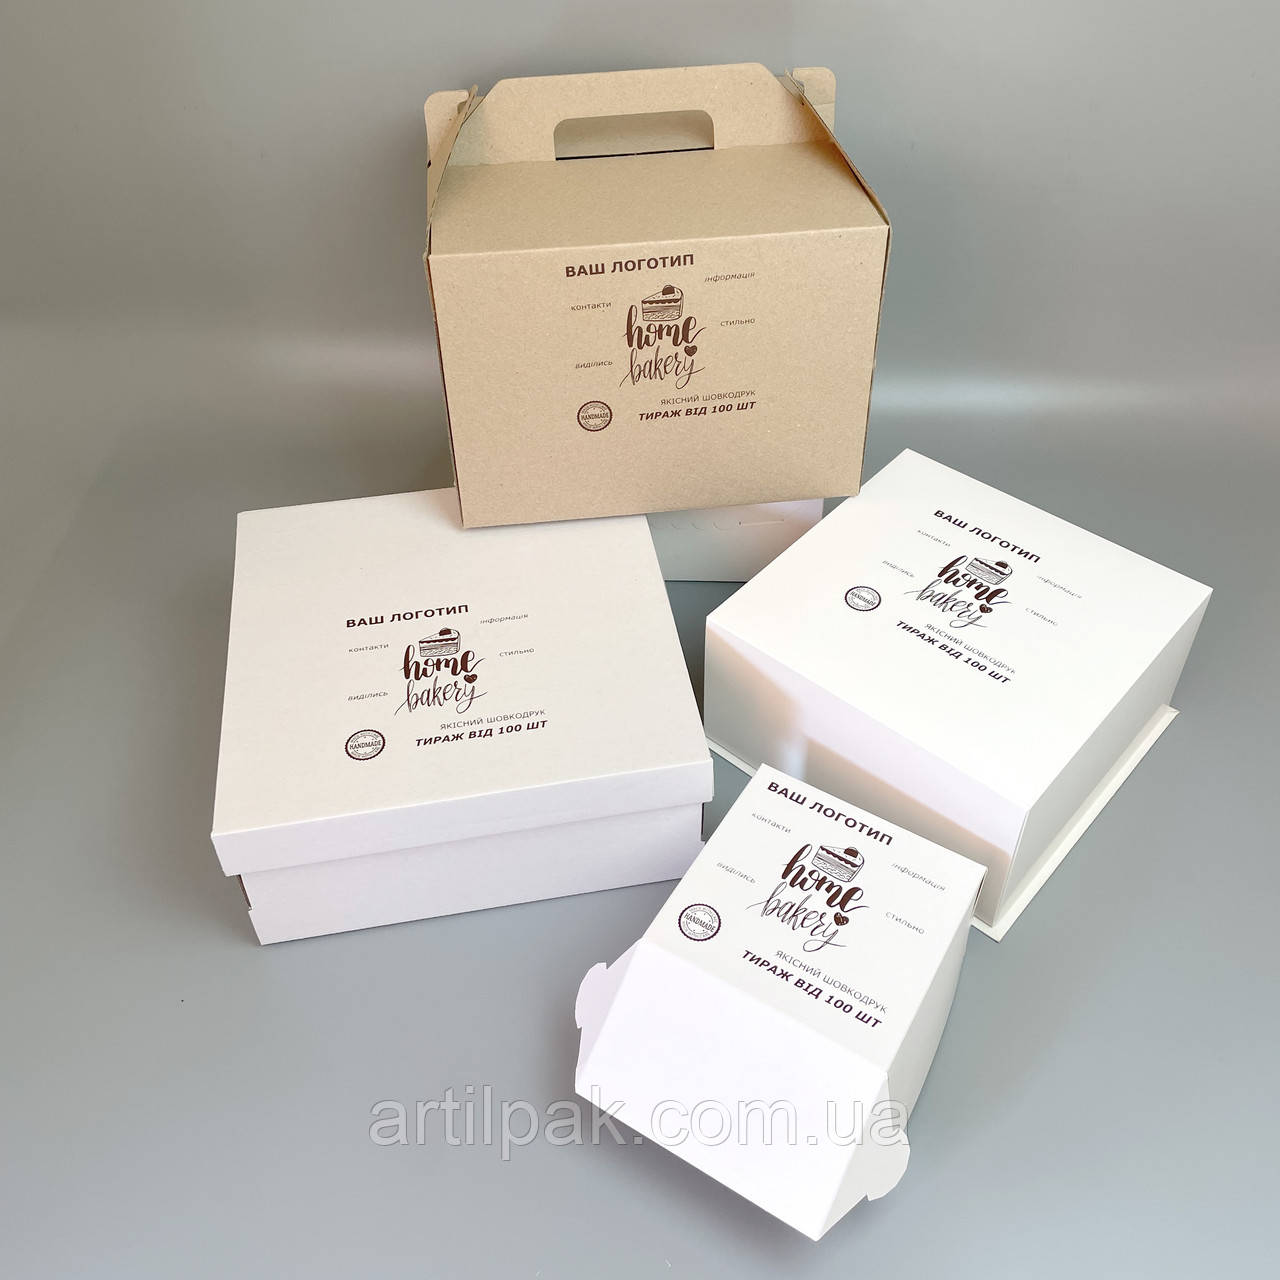 Брендування коробок/ Шовкотрафаретний друк на коробках і пакетах малими тиражами